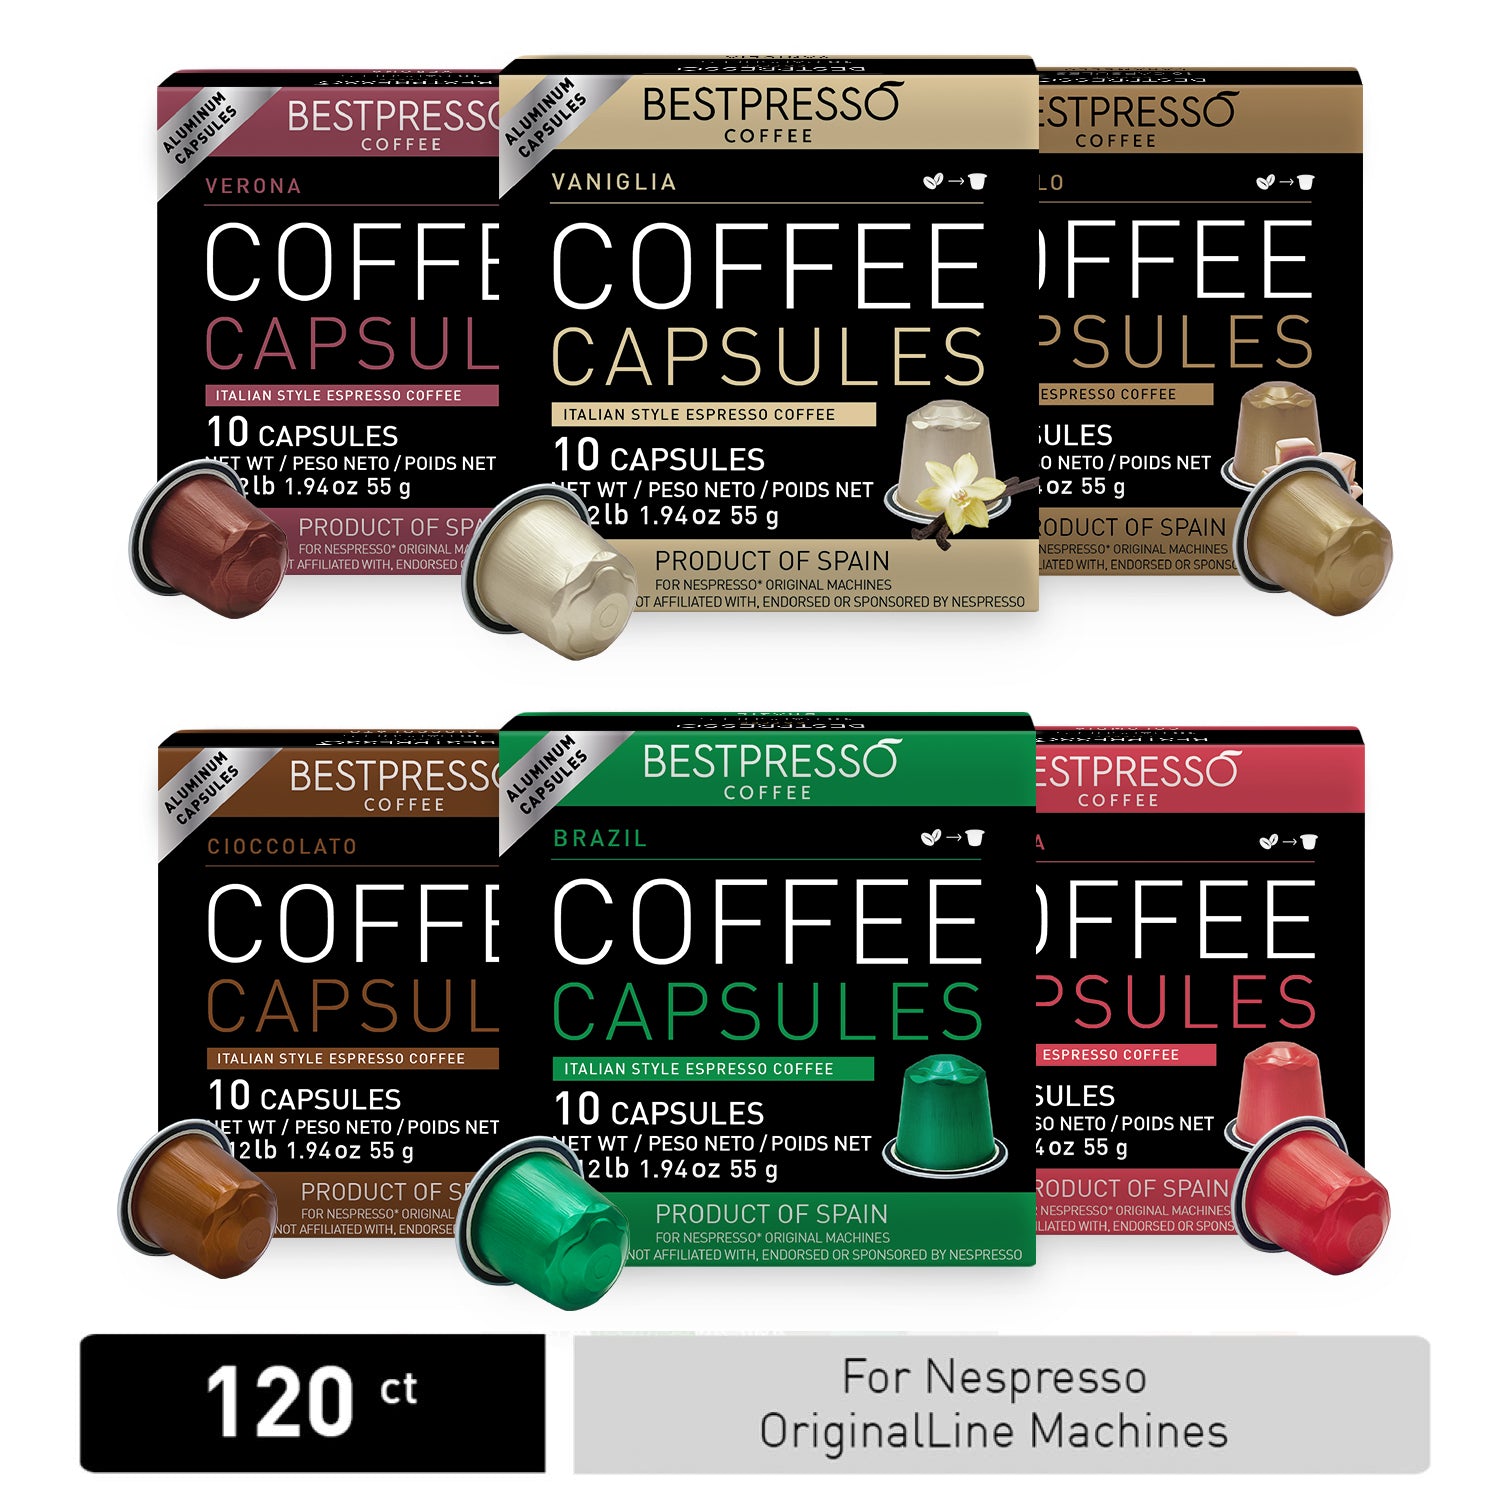 Flavored & Intense Variety - Bestpresso.com